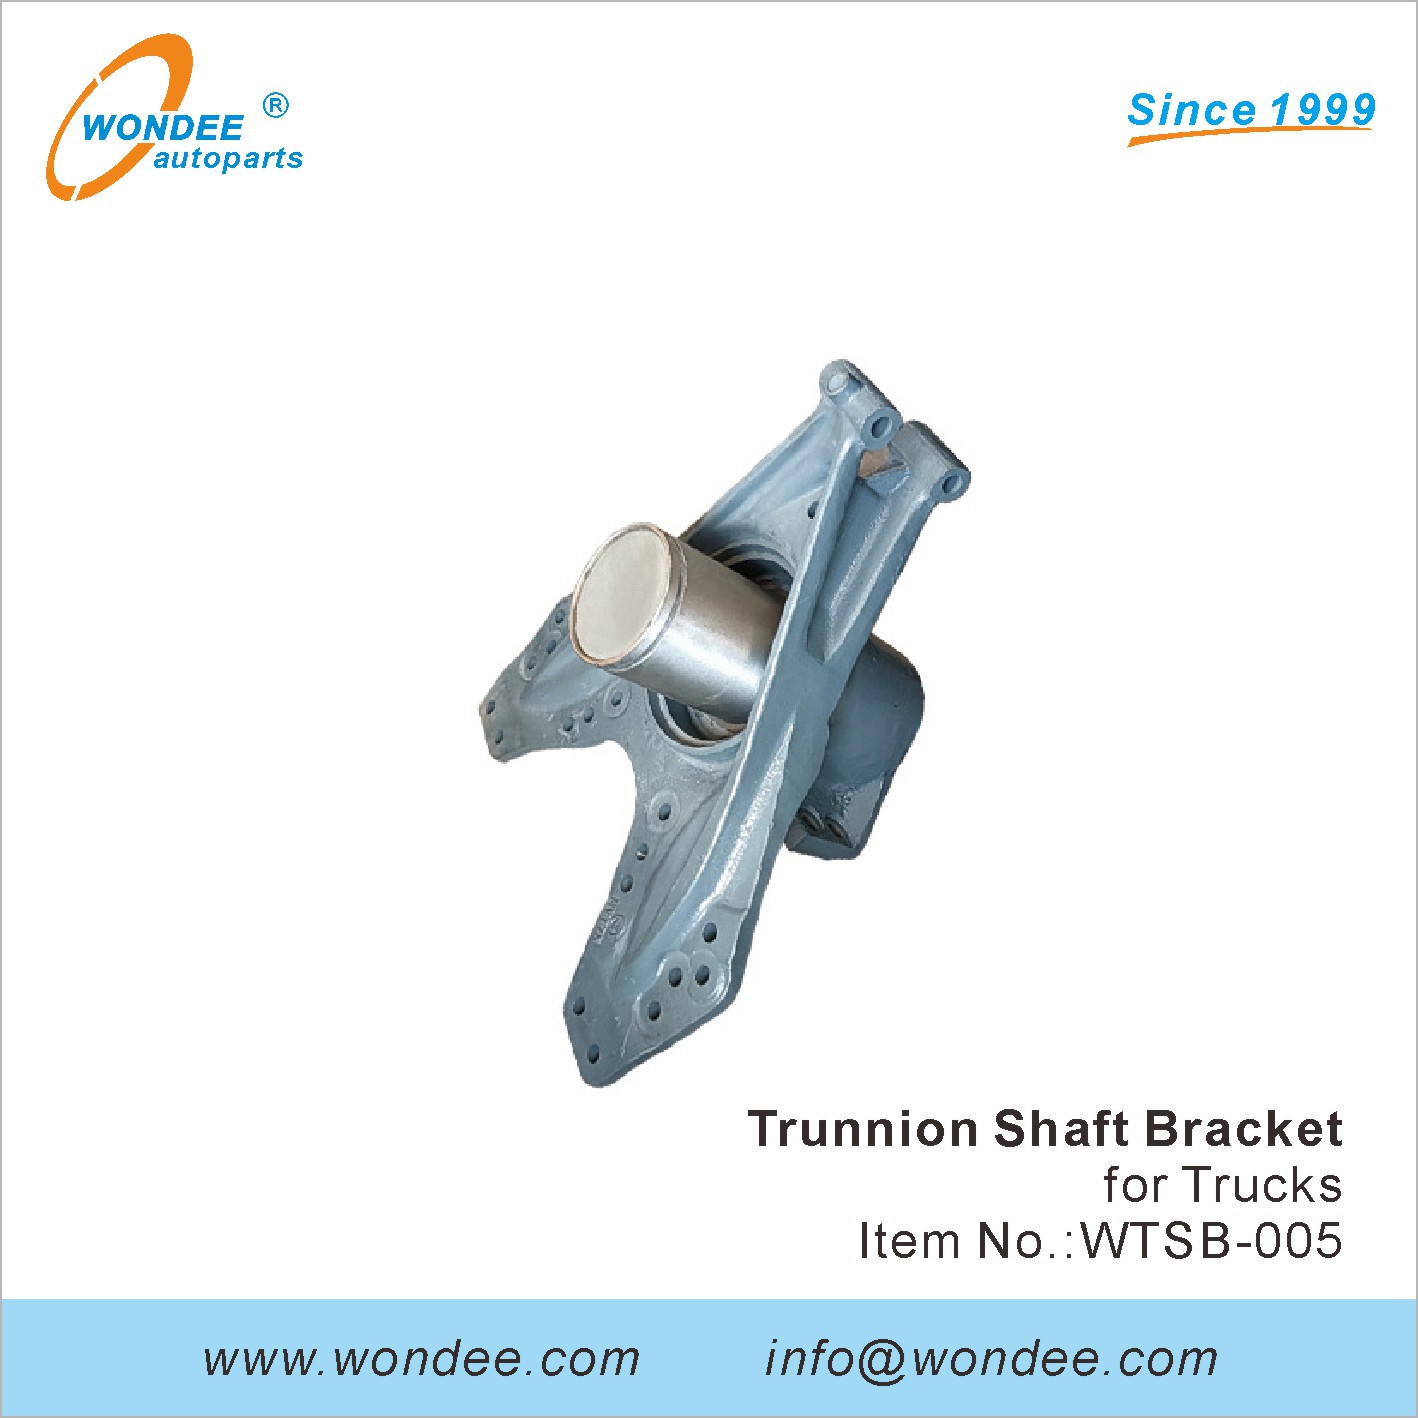 WONDEE trunnion shaft bracket (5)